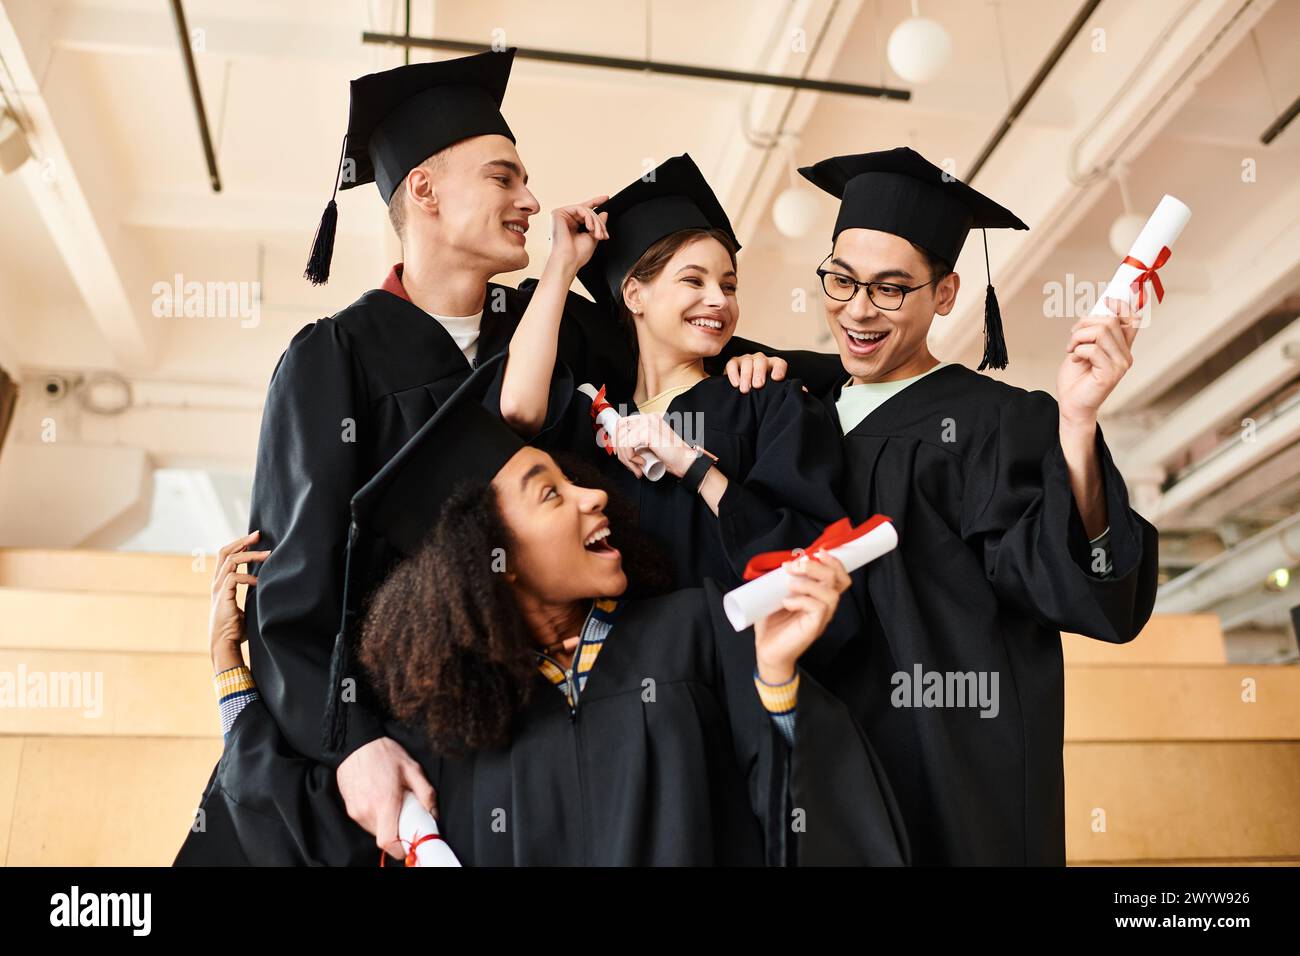 Eine vielfältige Gruppe glücklicher Studenten in Abschlusskleidern und akademischen Mützen posiert für ein Foto drinnen. Stockfoto